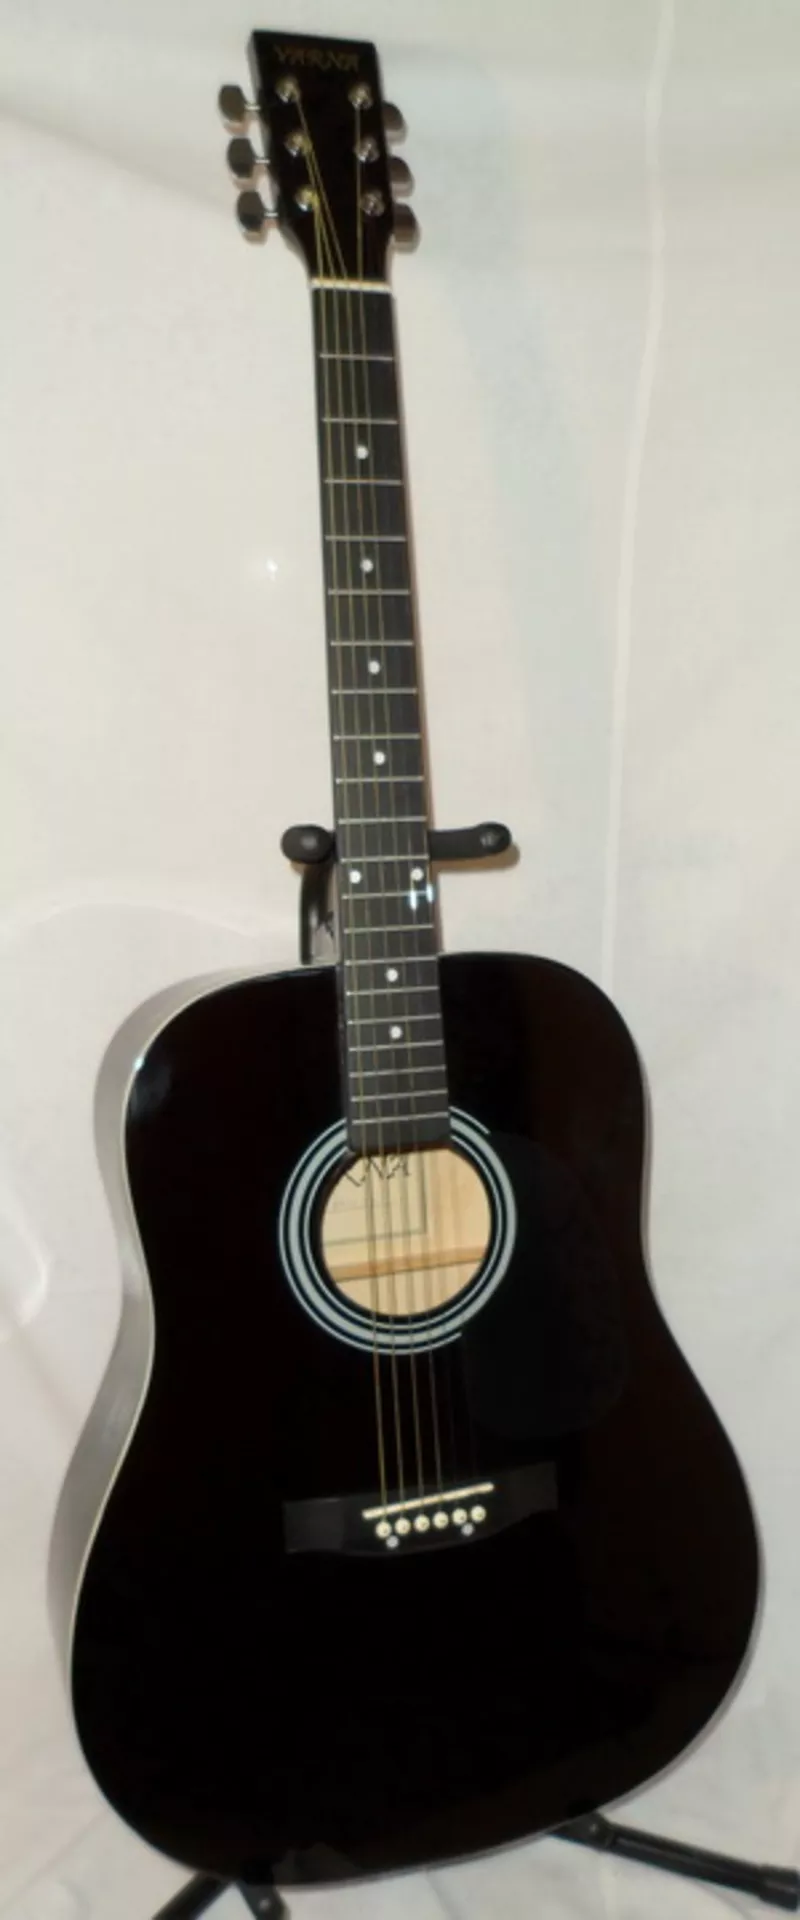 Акустическая гитара Varna Md-3,  новая